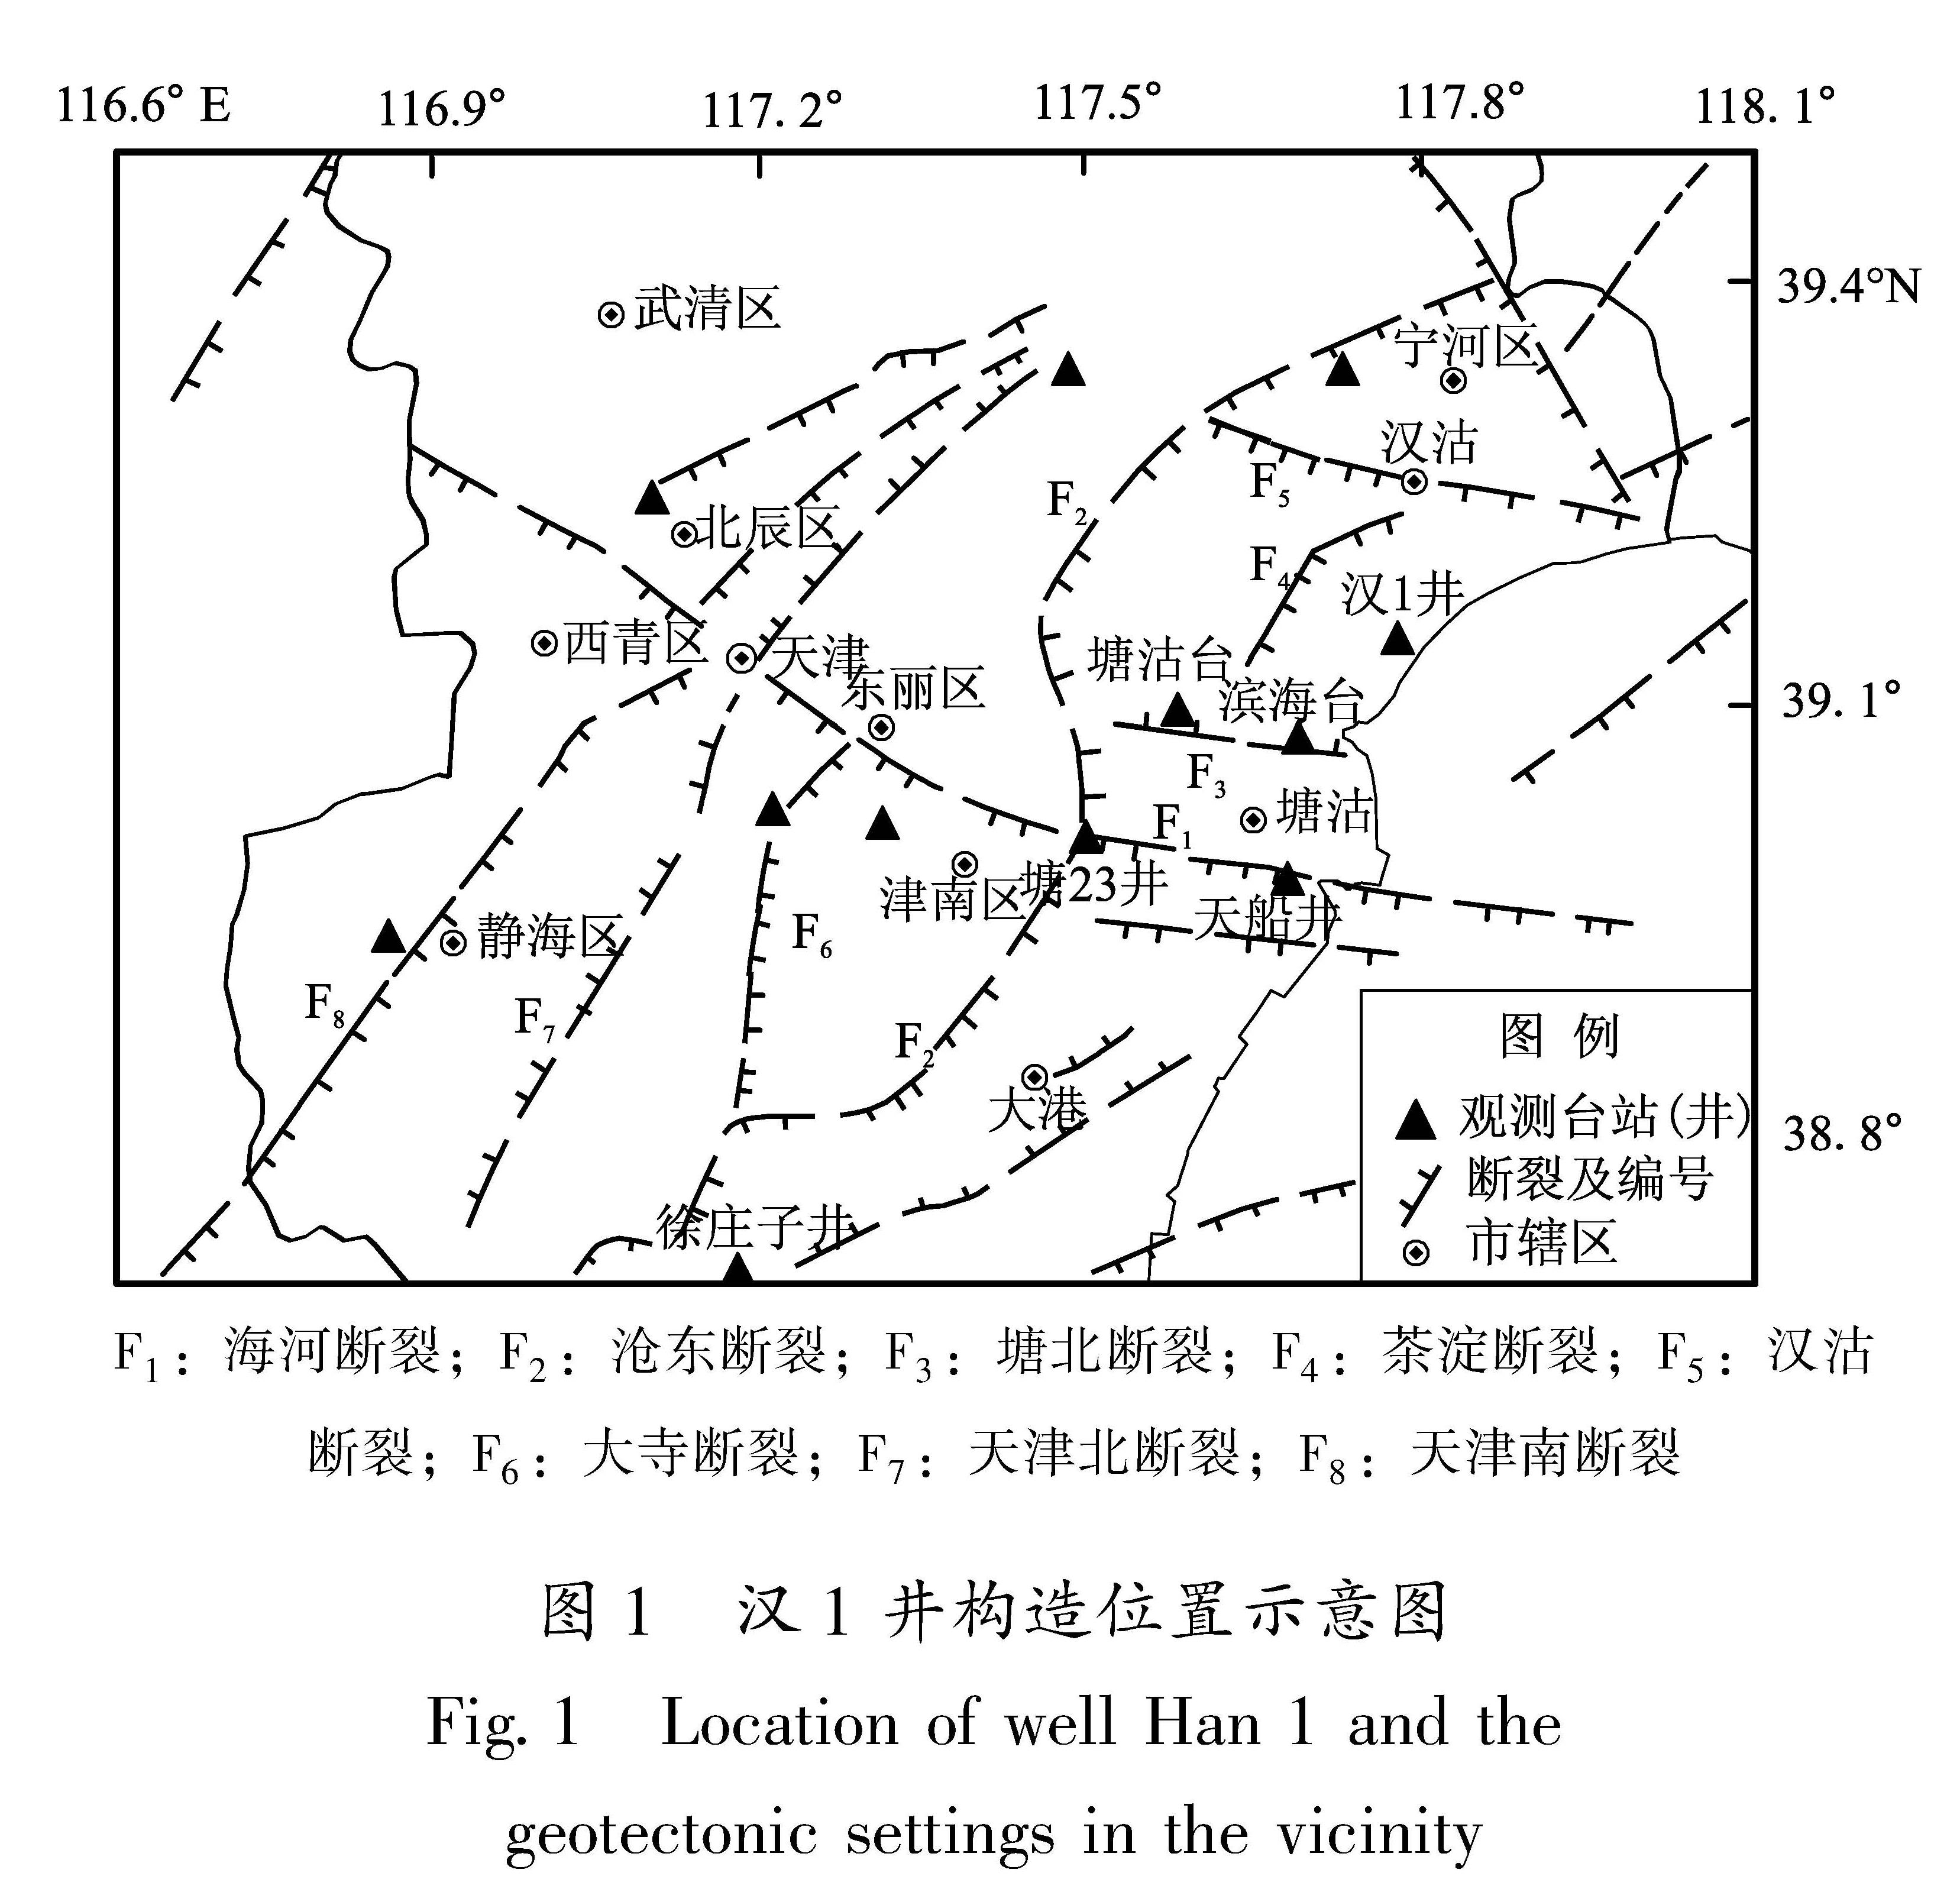 图1 汉1井构造位置示意图<br/>Fig.1 Location of well Han 1 and the geotectonic settings in the vicinity  